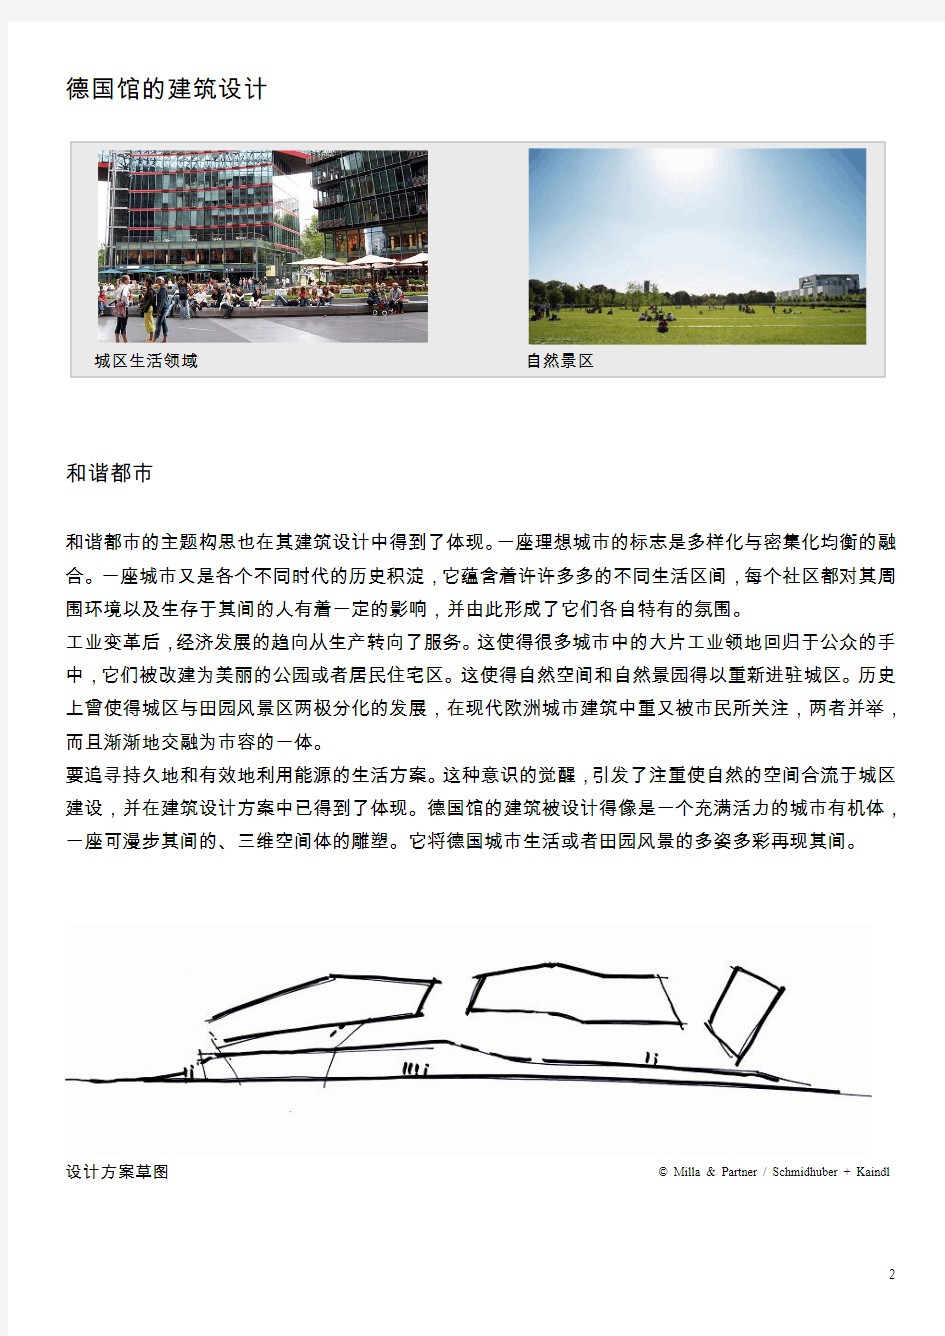 2010上海世博会_德国馆展馆方案